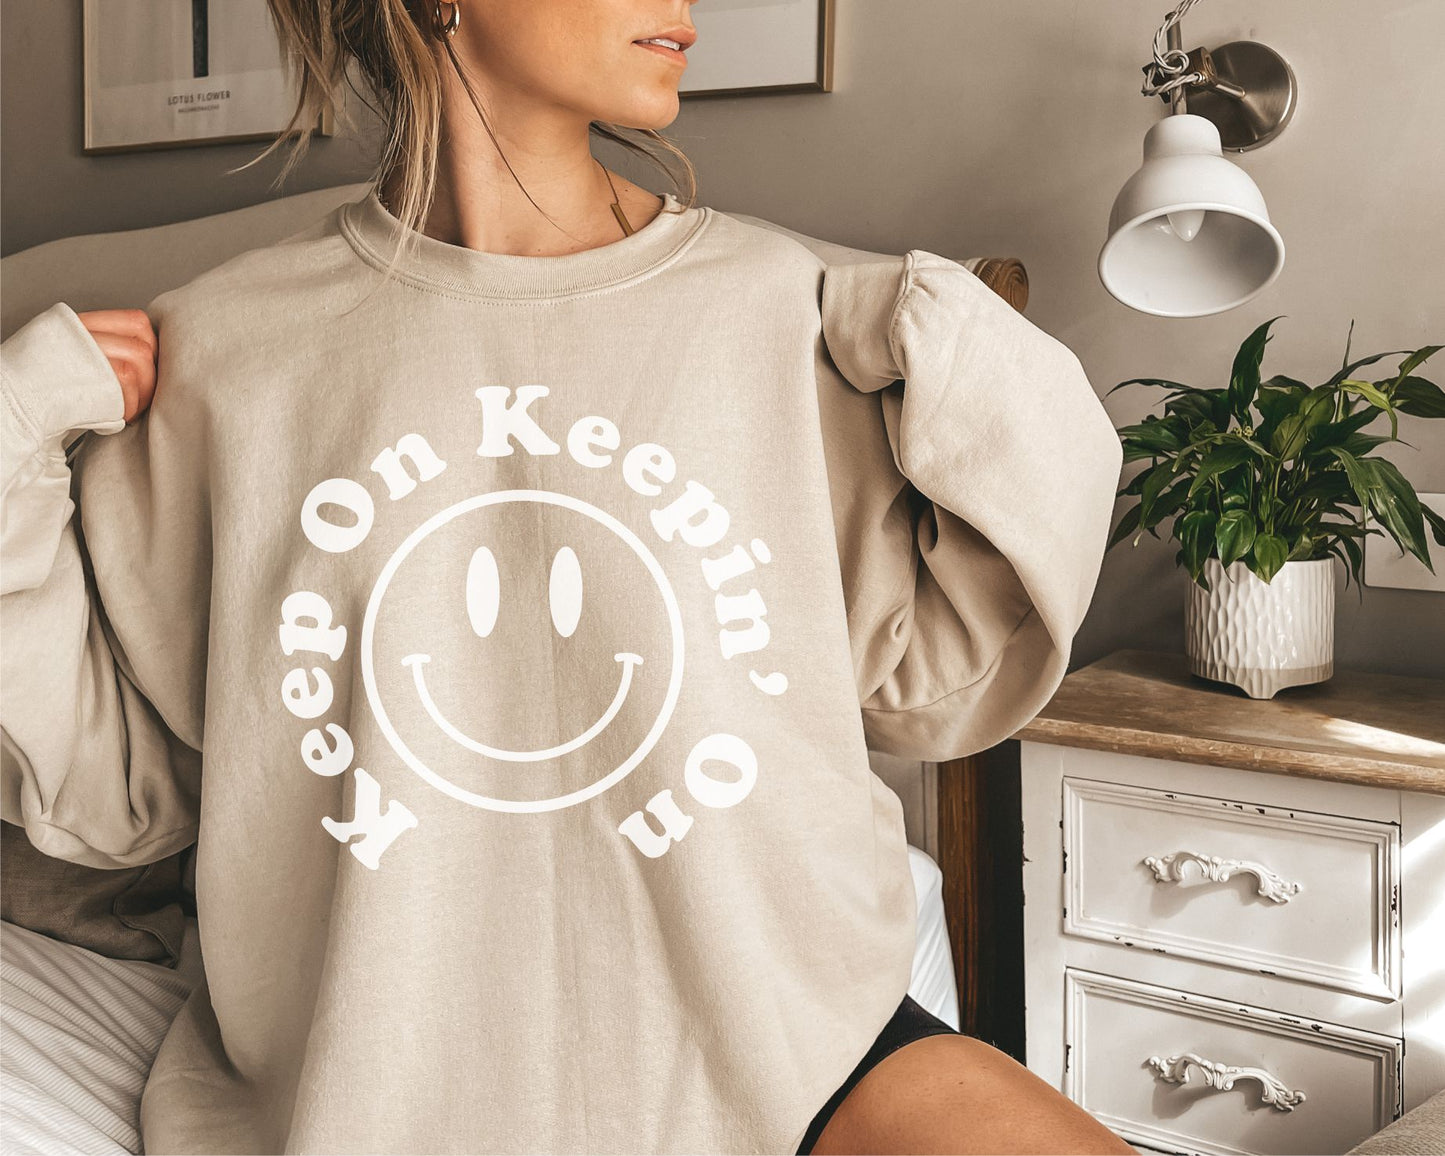 Keep On Keepin' On Smiley Face Crewneck Sweatshirt